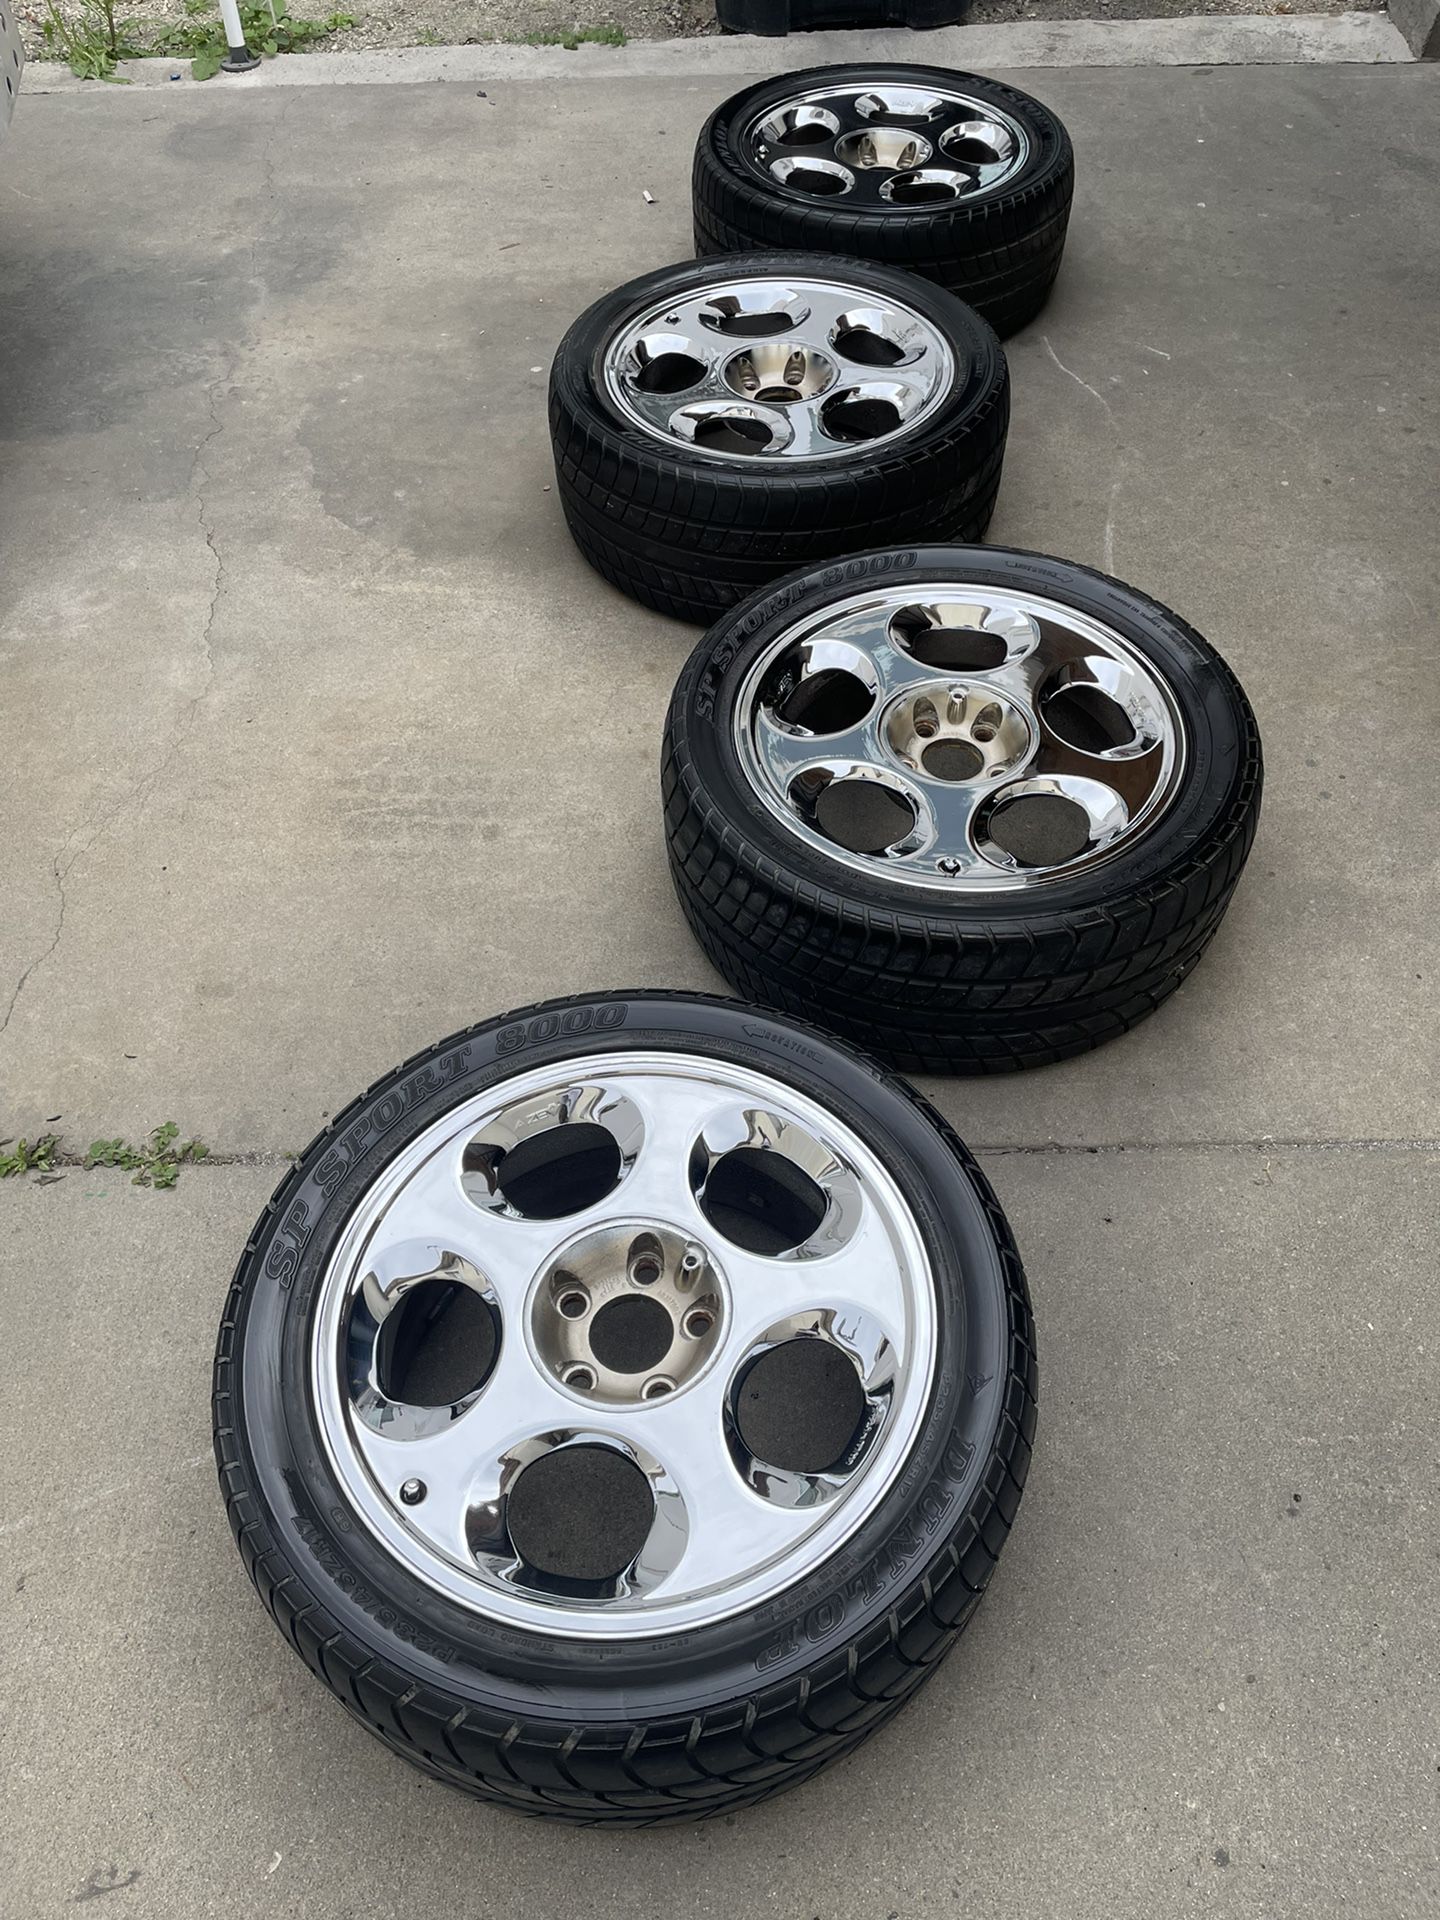 AZEV💎 wheels & tires type B 17x7.5 Chrome